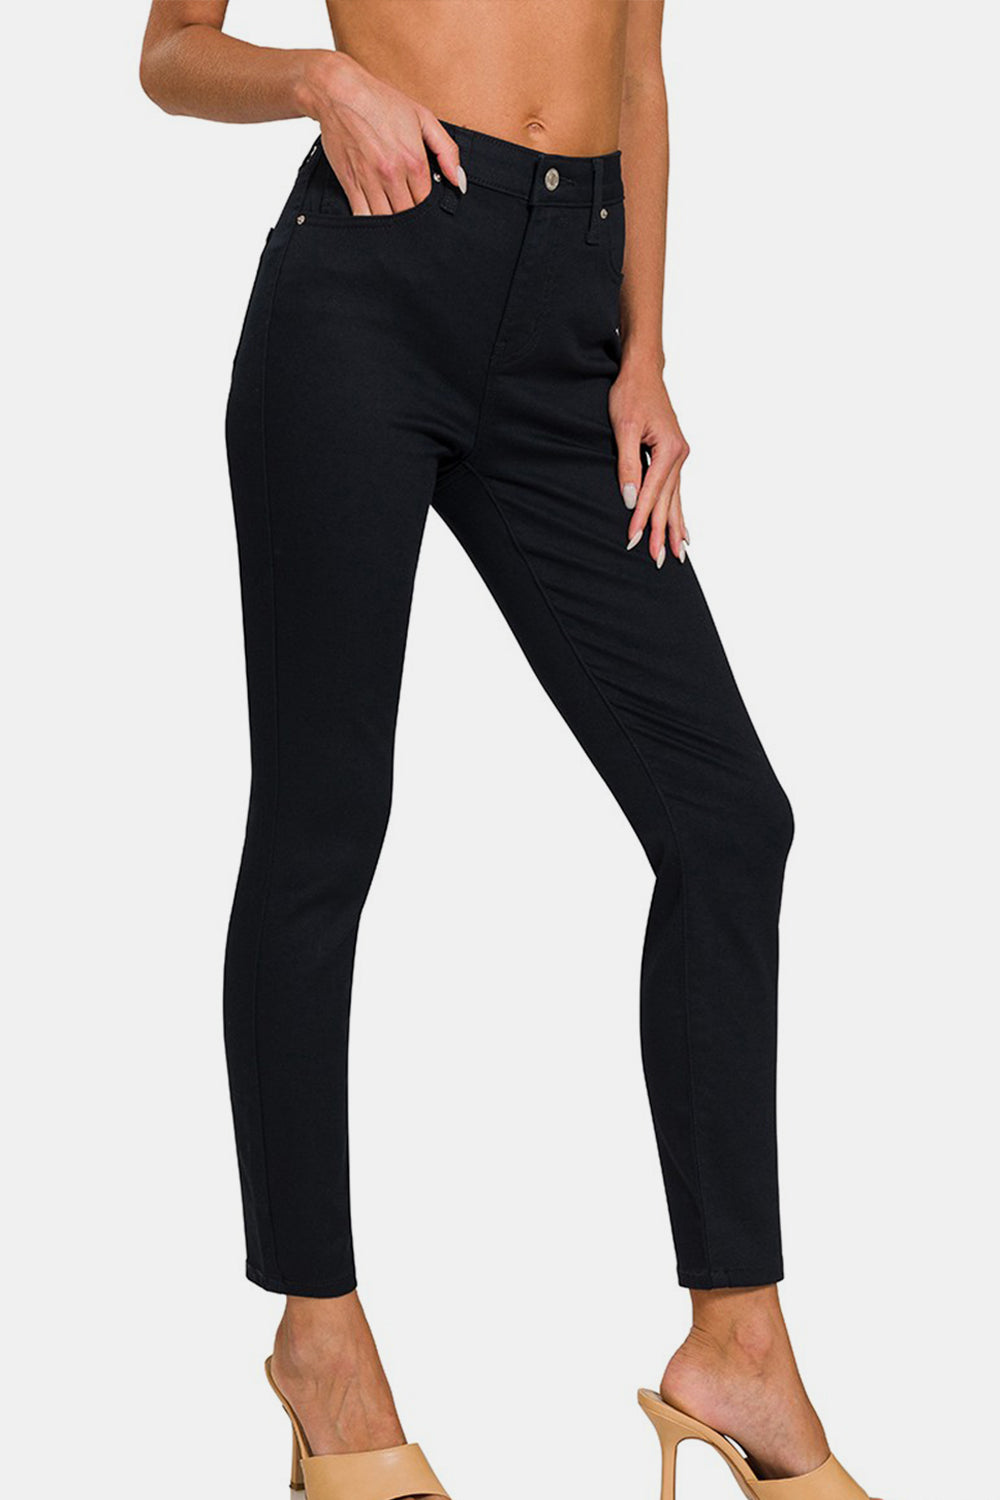 Zenana Black High-Rise Skinny Jeans Black Trendsi